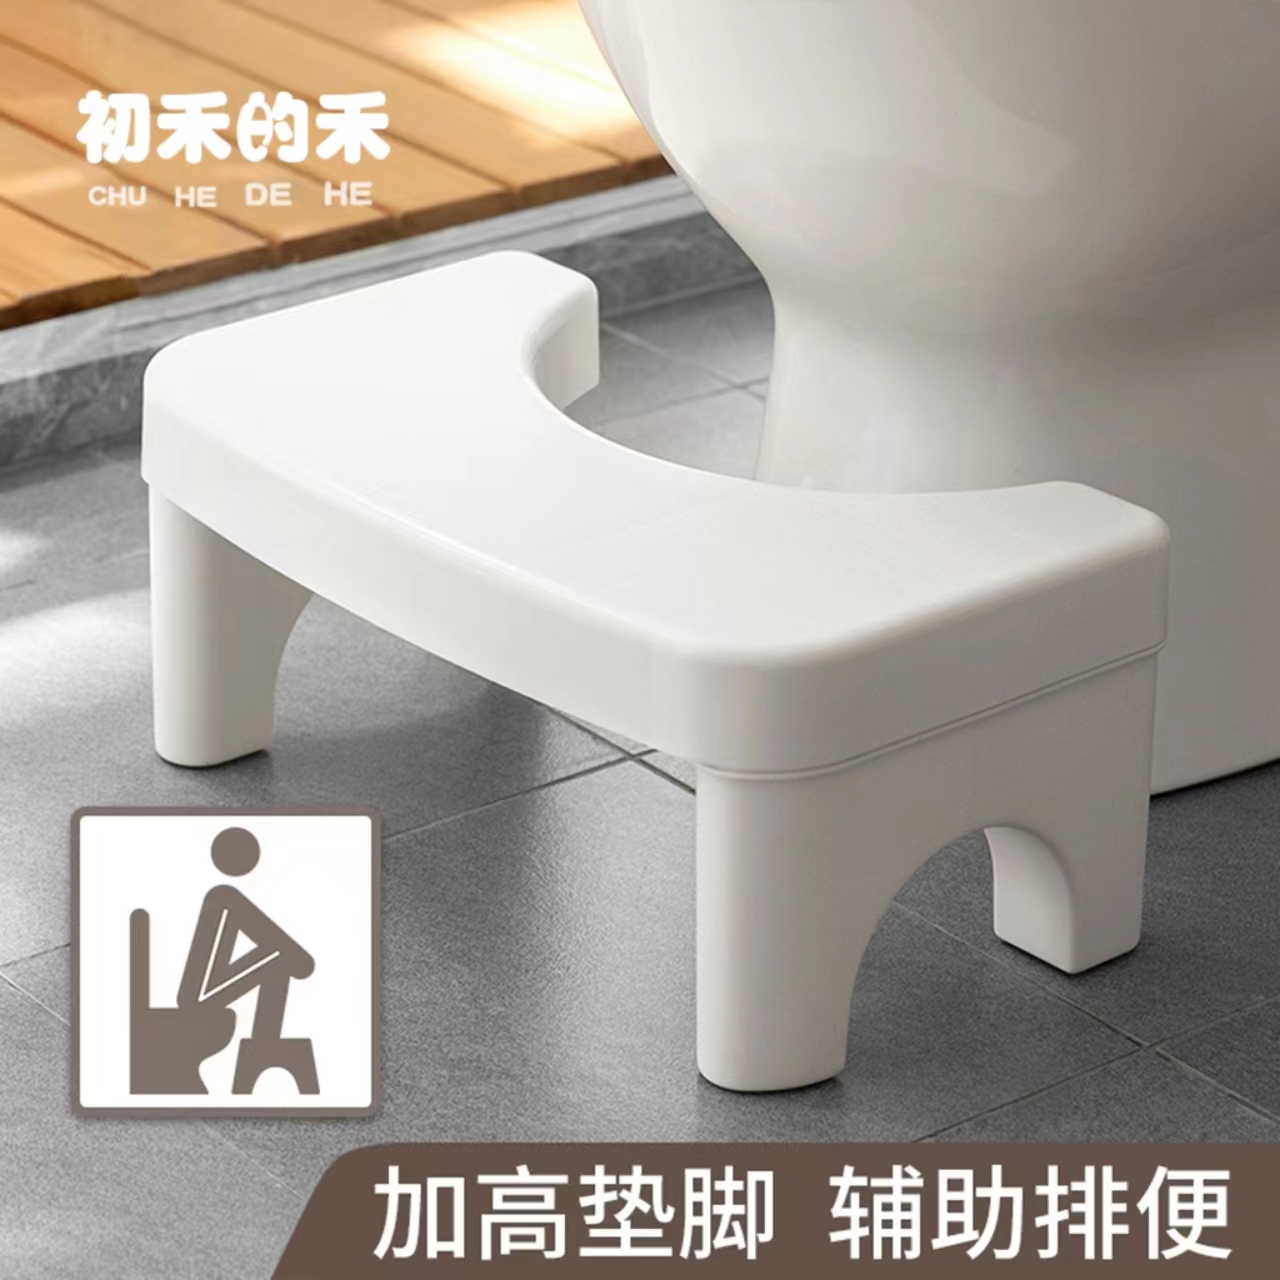 家用加厚马桶凳儿童脚踏凳子厕所坐便凳垫脚凳浴室防滑成人蹲便凳